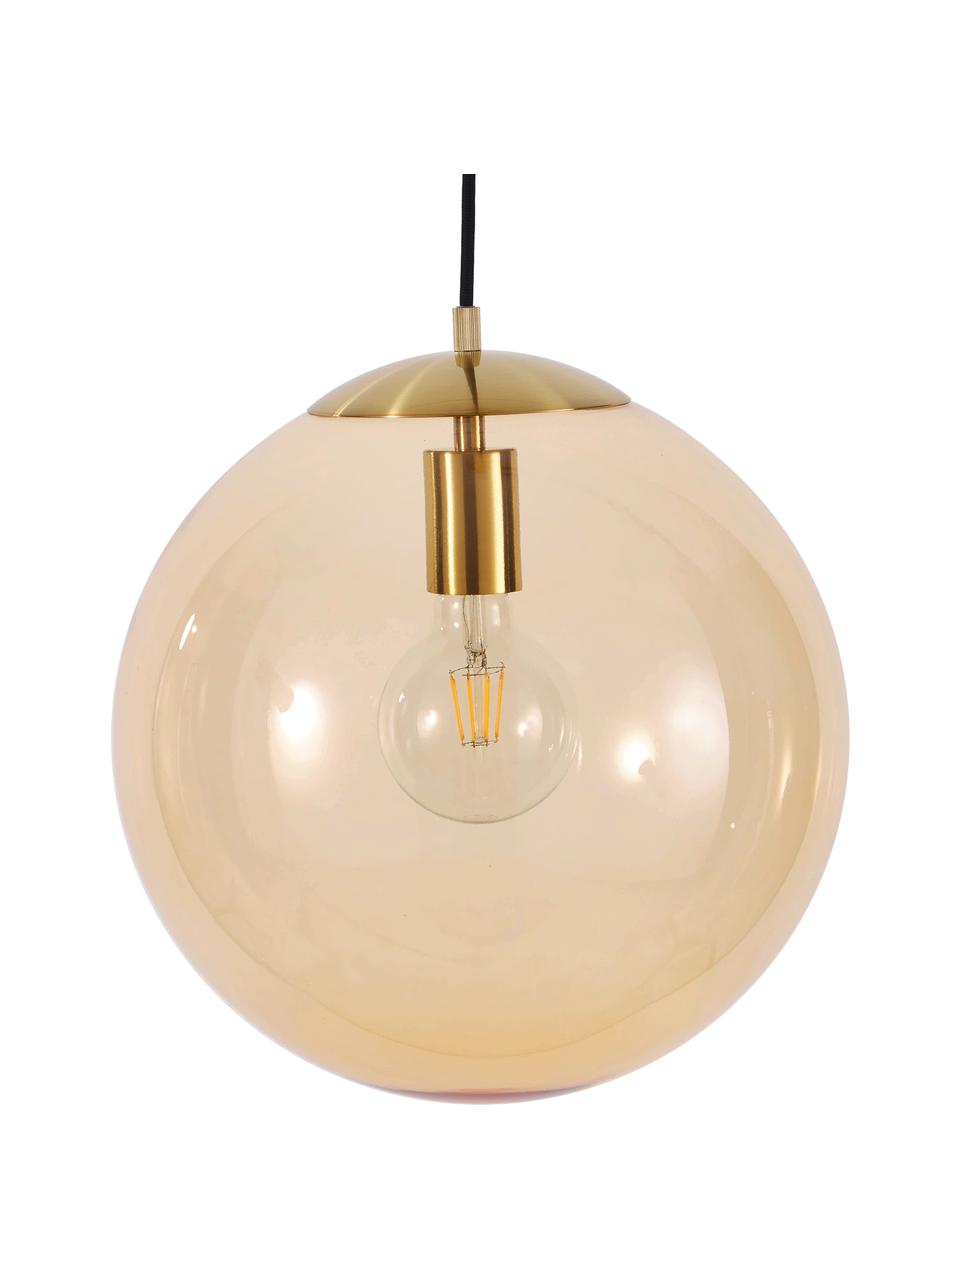 Lámpara de techo Bao, Pantalla: vidrio, Anclaje: metal galvanizado, Cable: cubierto en tela, Dorado, Ø 35 cm